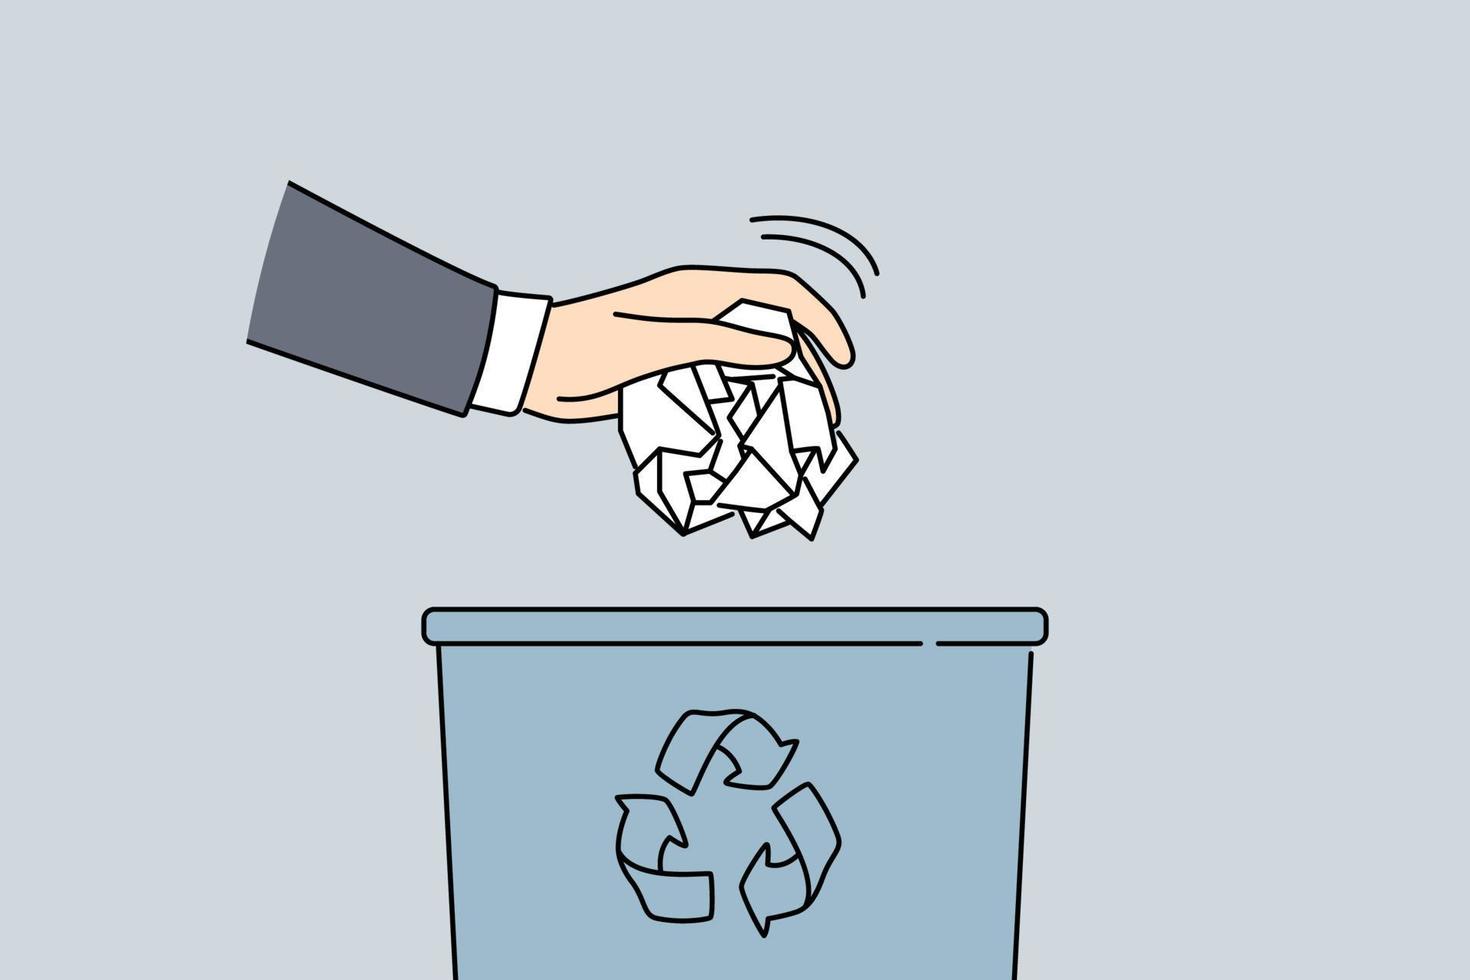 man hand sätta papper i skräp bin. närbild av manlig kasta skrynkliga pappersarbete i sopor behållare. begrepp av återvinning och avfall sortering. vektor illustration.